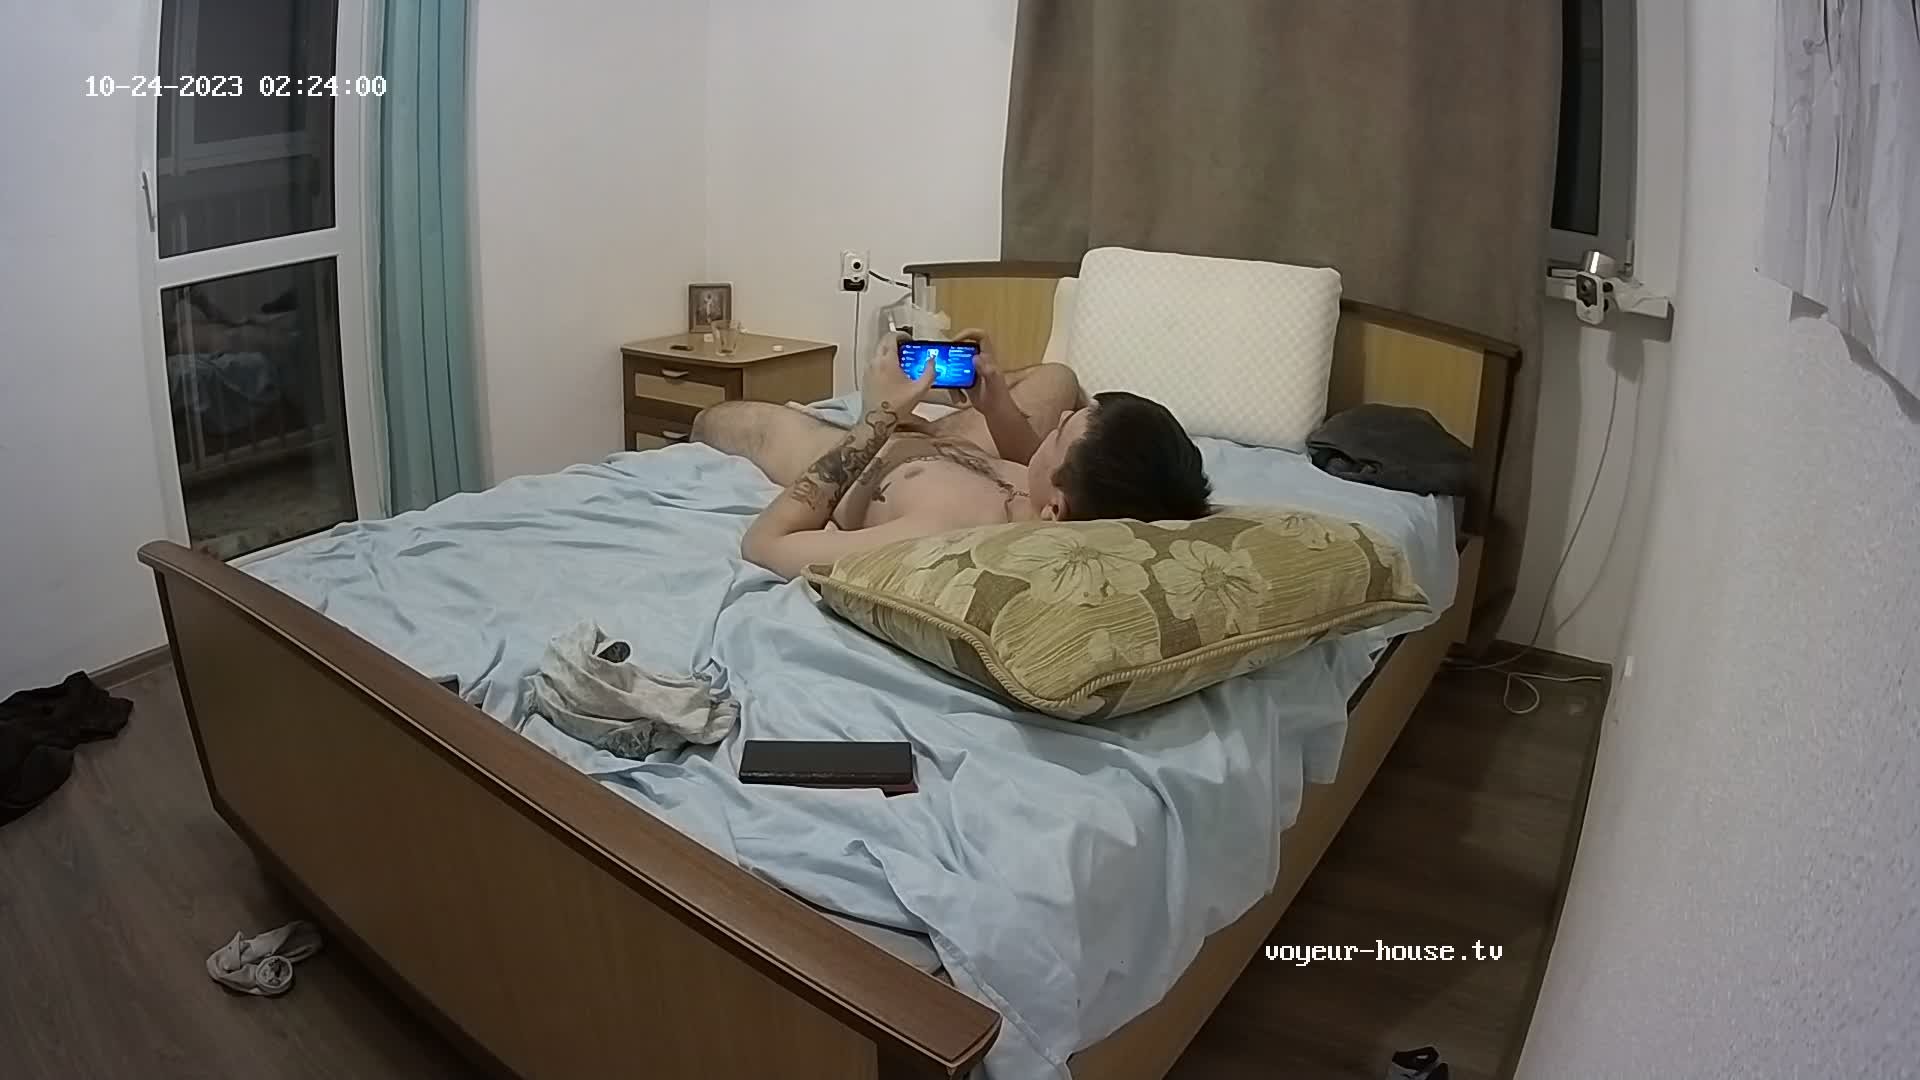 Artem naked gaming after sex 24 Oct 2023